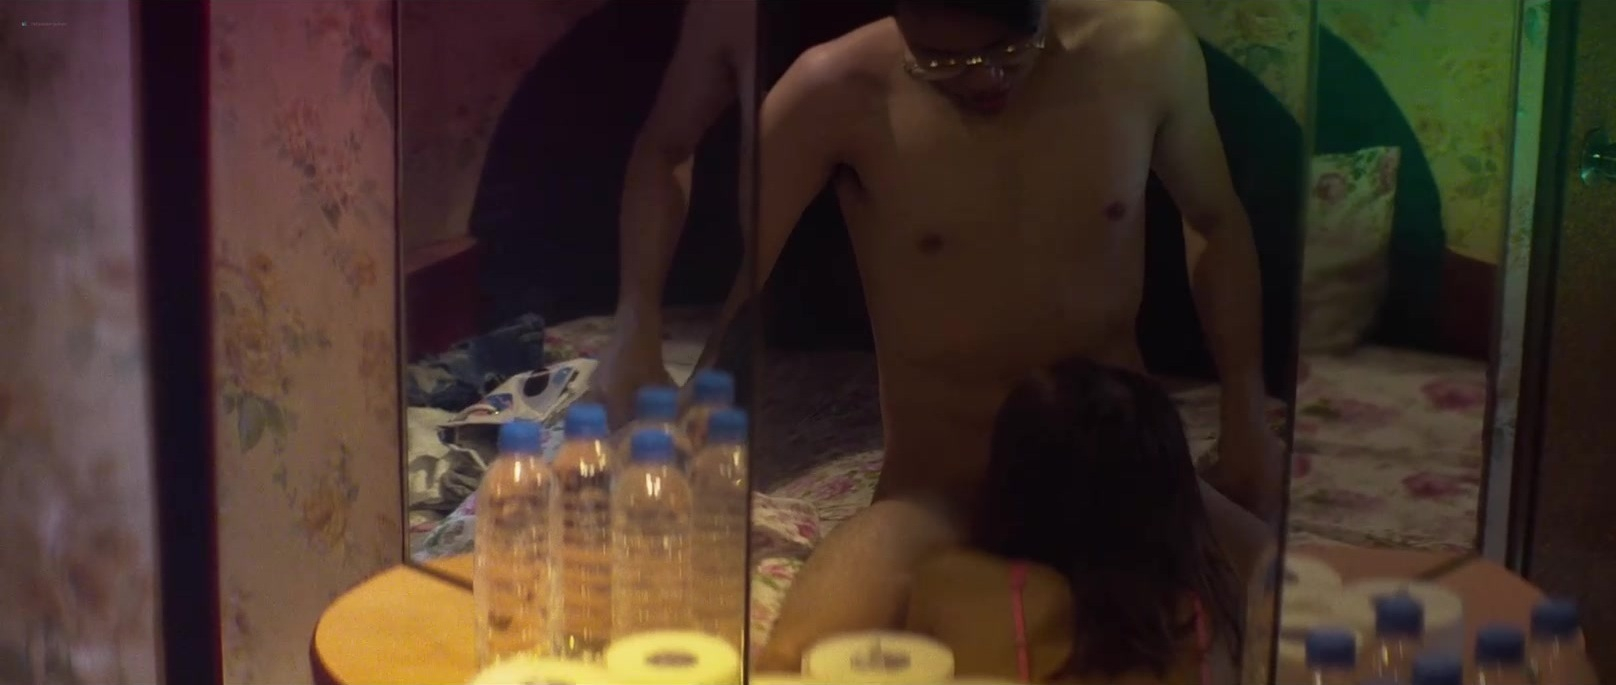 Nude Video Celebs Ashina Kwok Nude Fish Liew Nude Koyi Mak Nude